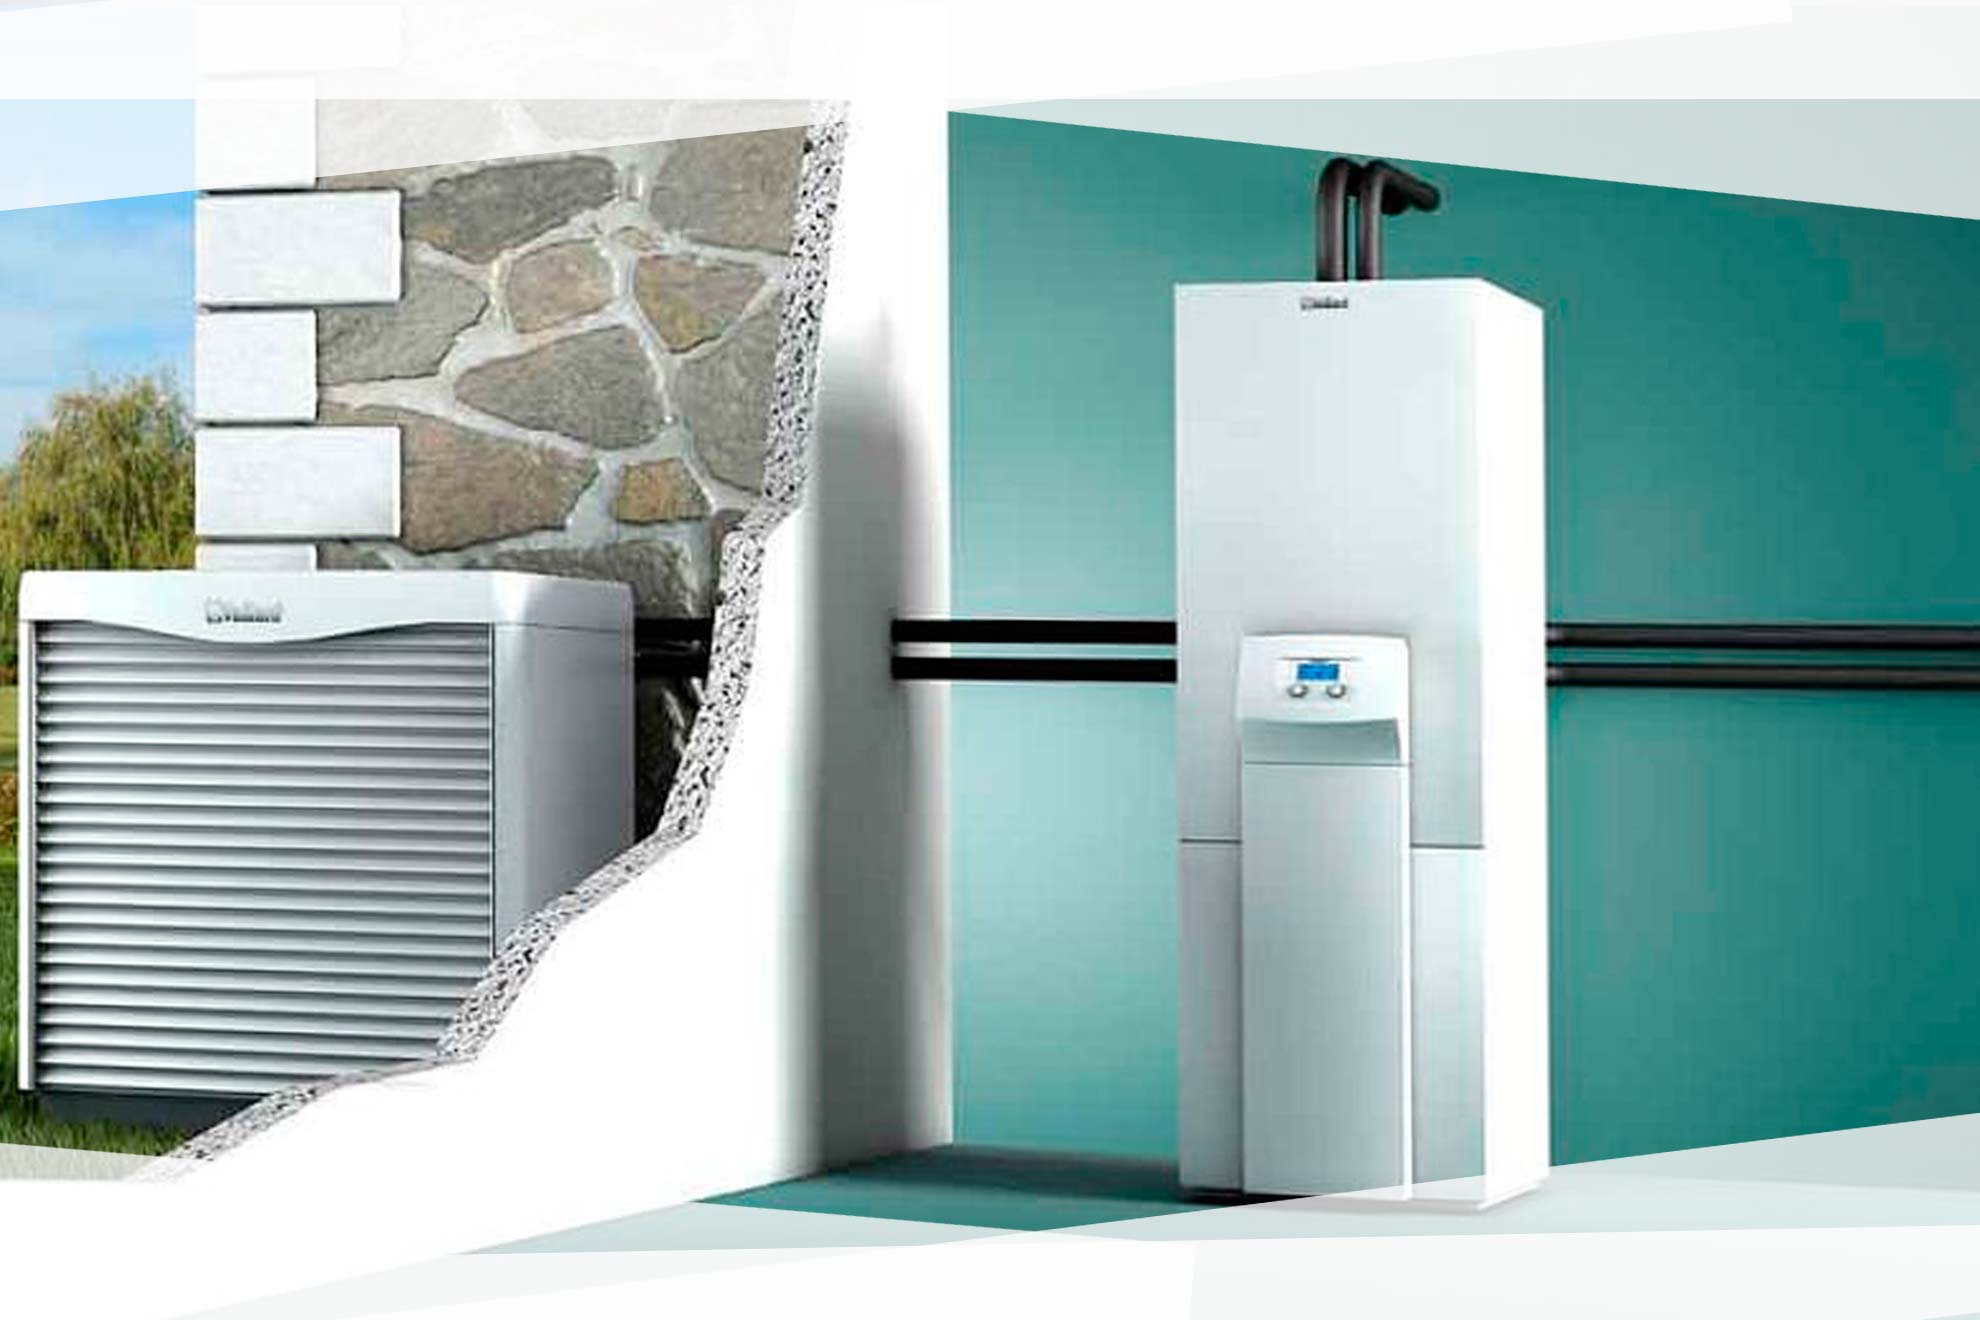 Servicio técnico para instalaciones de calefacción por aerotermia en Bilbao Bizkaia para la industria